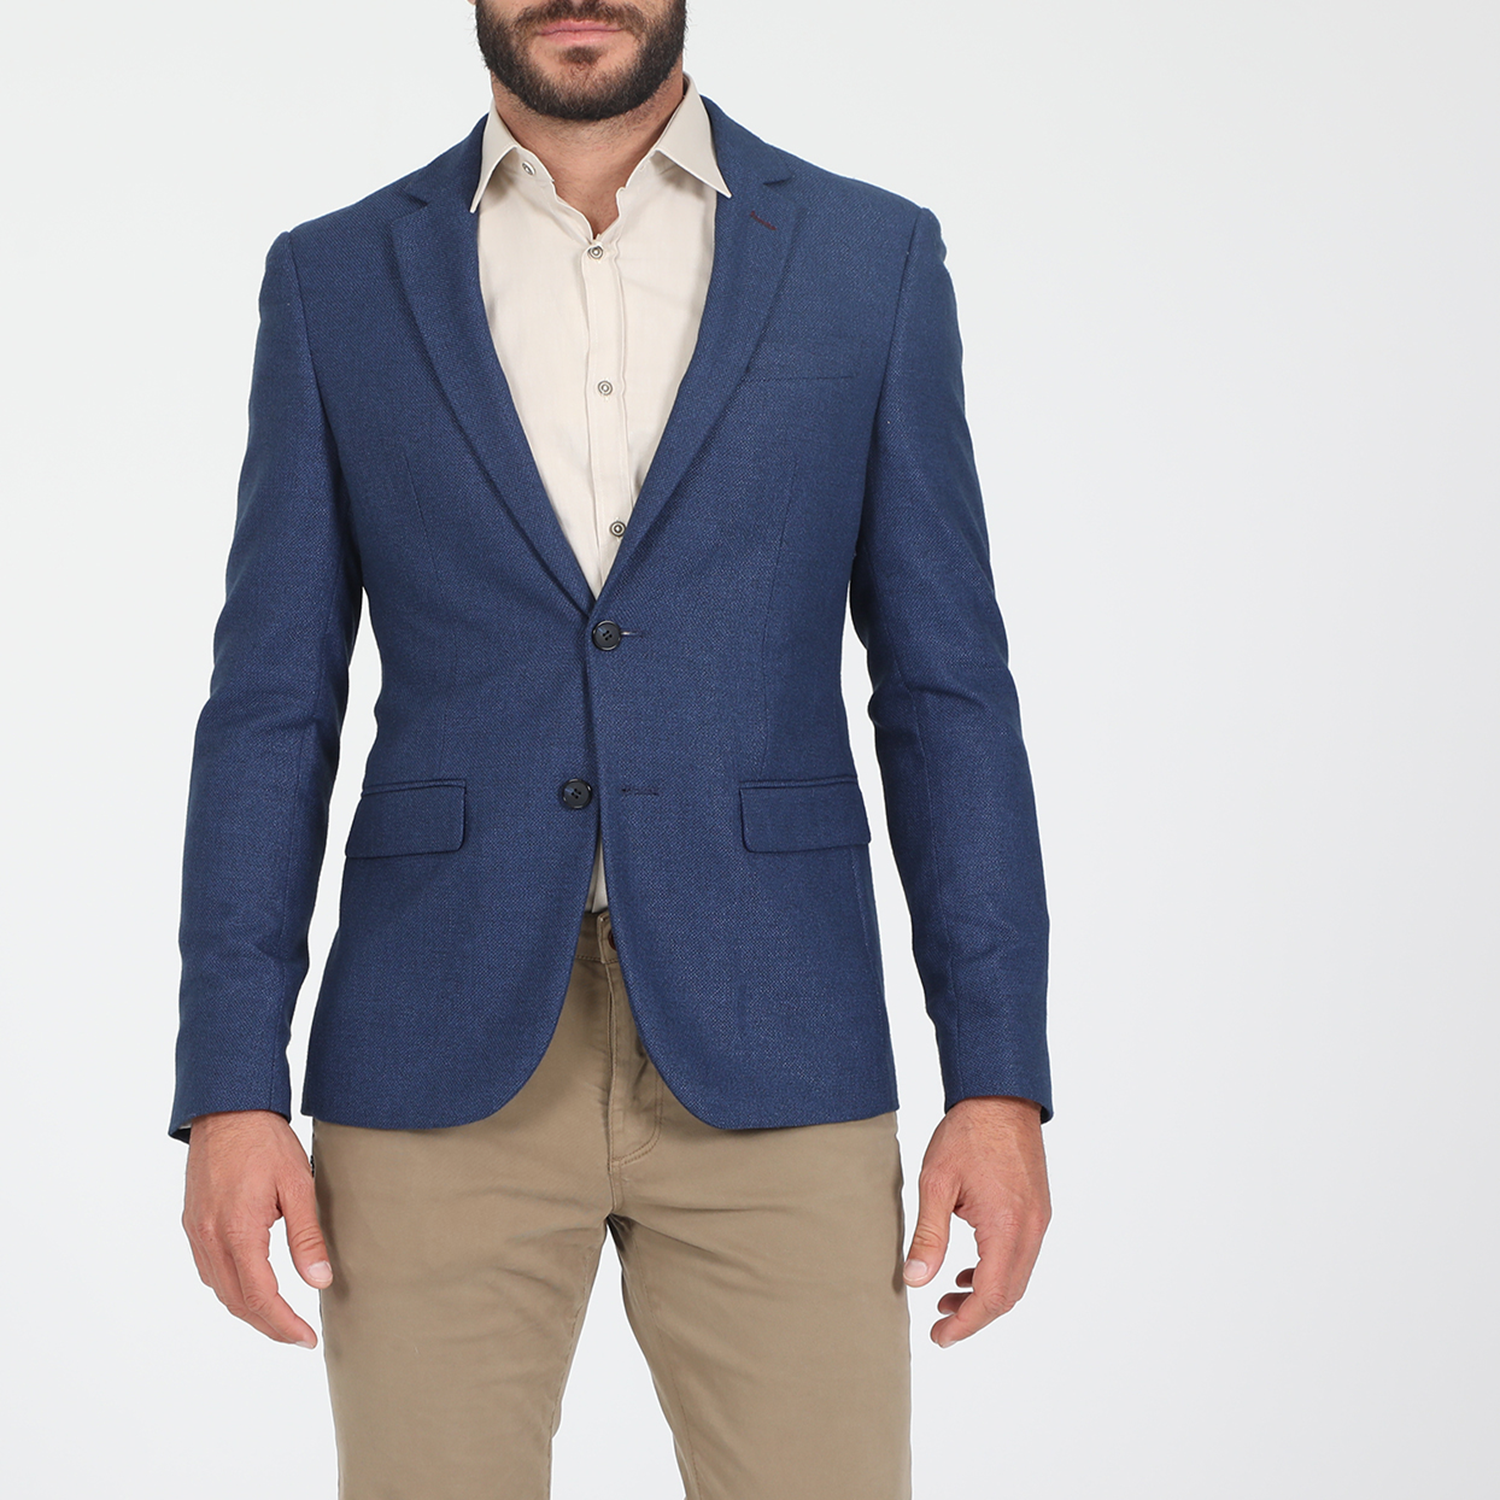 Ανδρικά/Ρούχα/Πανωφόρια/Σακάκια MARTIN & CO - Ανδρικό σακάκι MARTIN & CO SLIM BLAZER μπλε